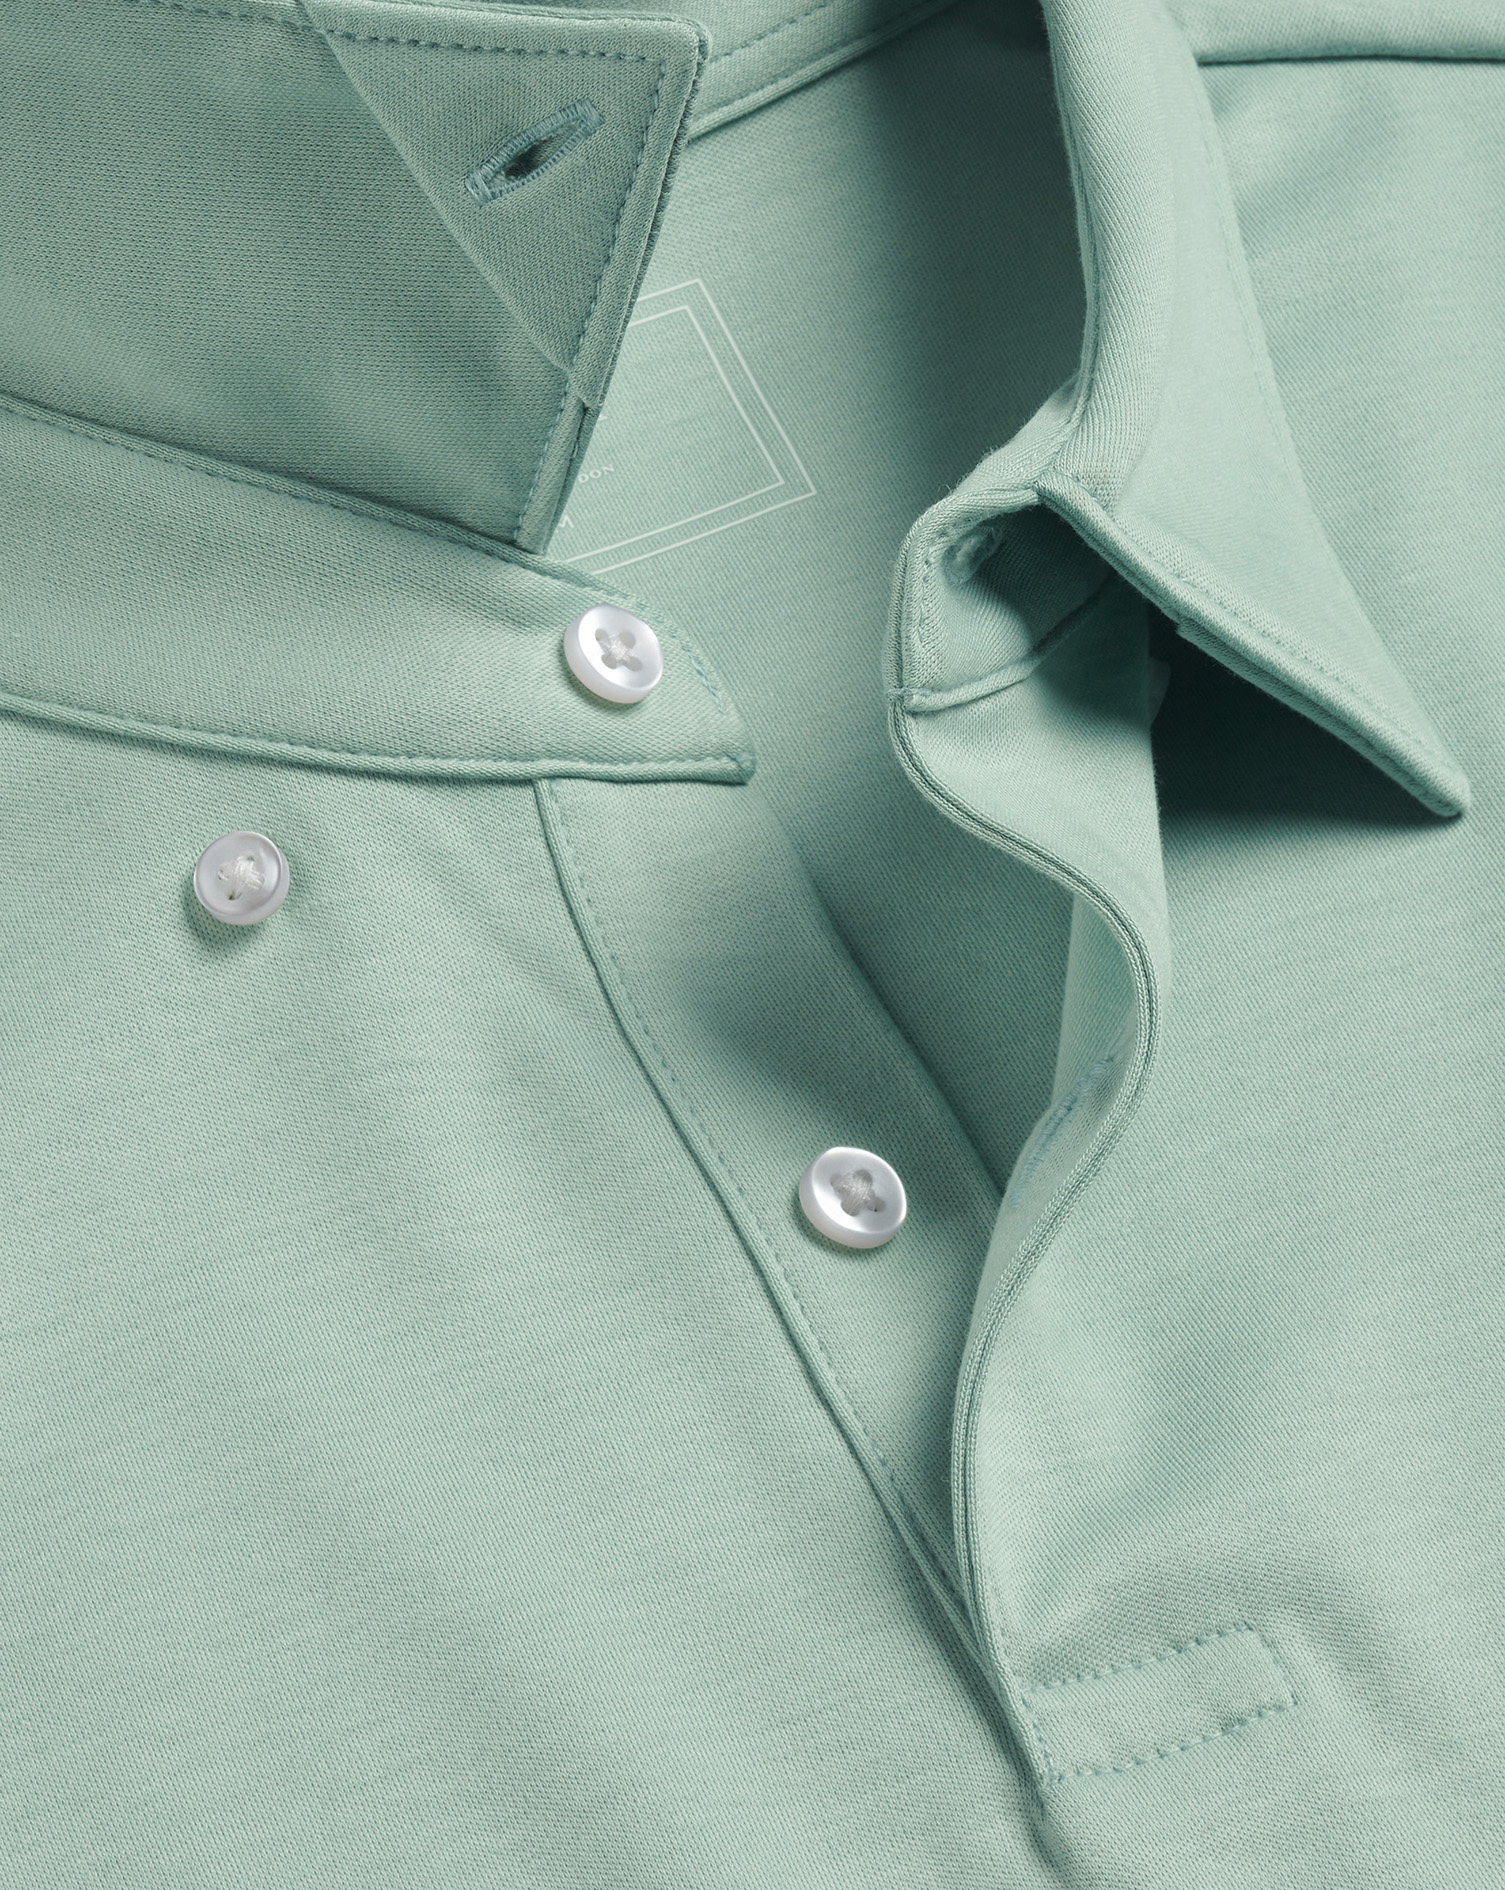 Men's Charles Tyrwhitt Smart Jersey Polo Shirt - Spearmint Green Size XXL Cotton
